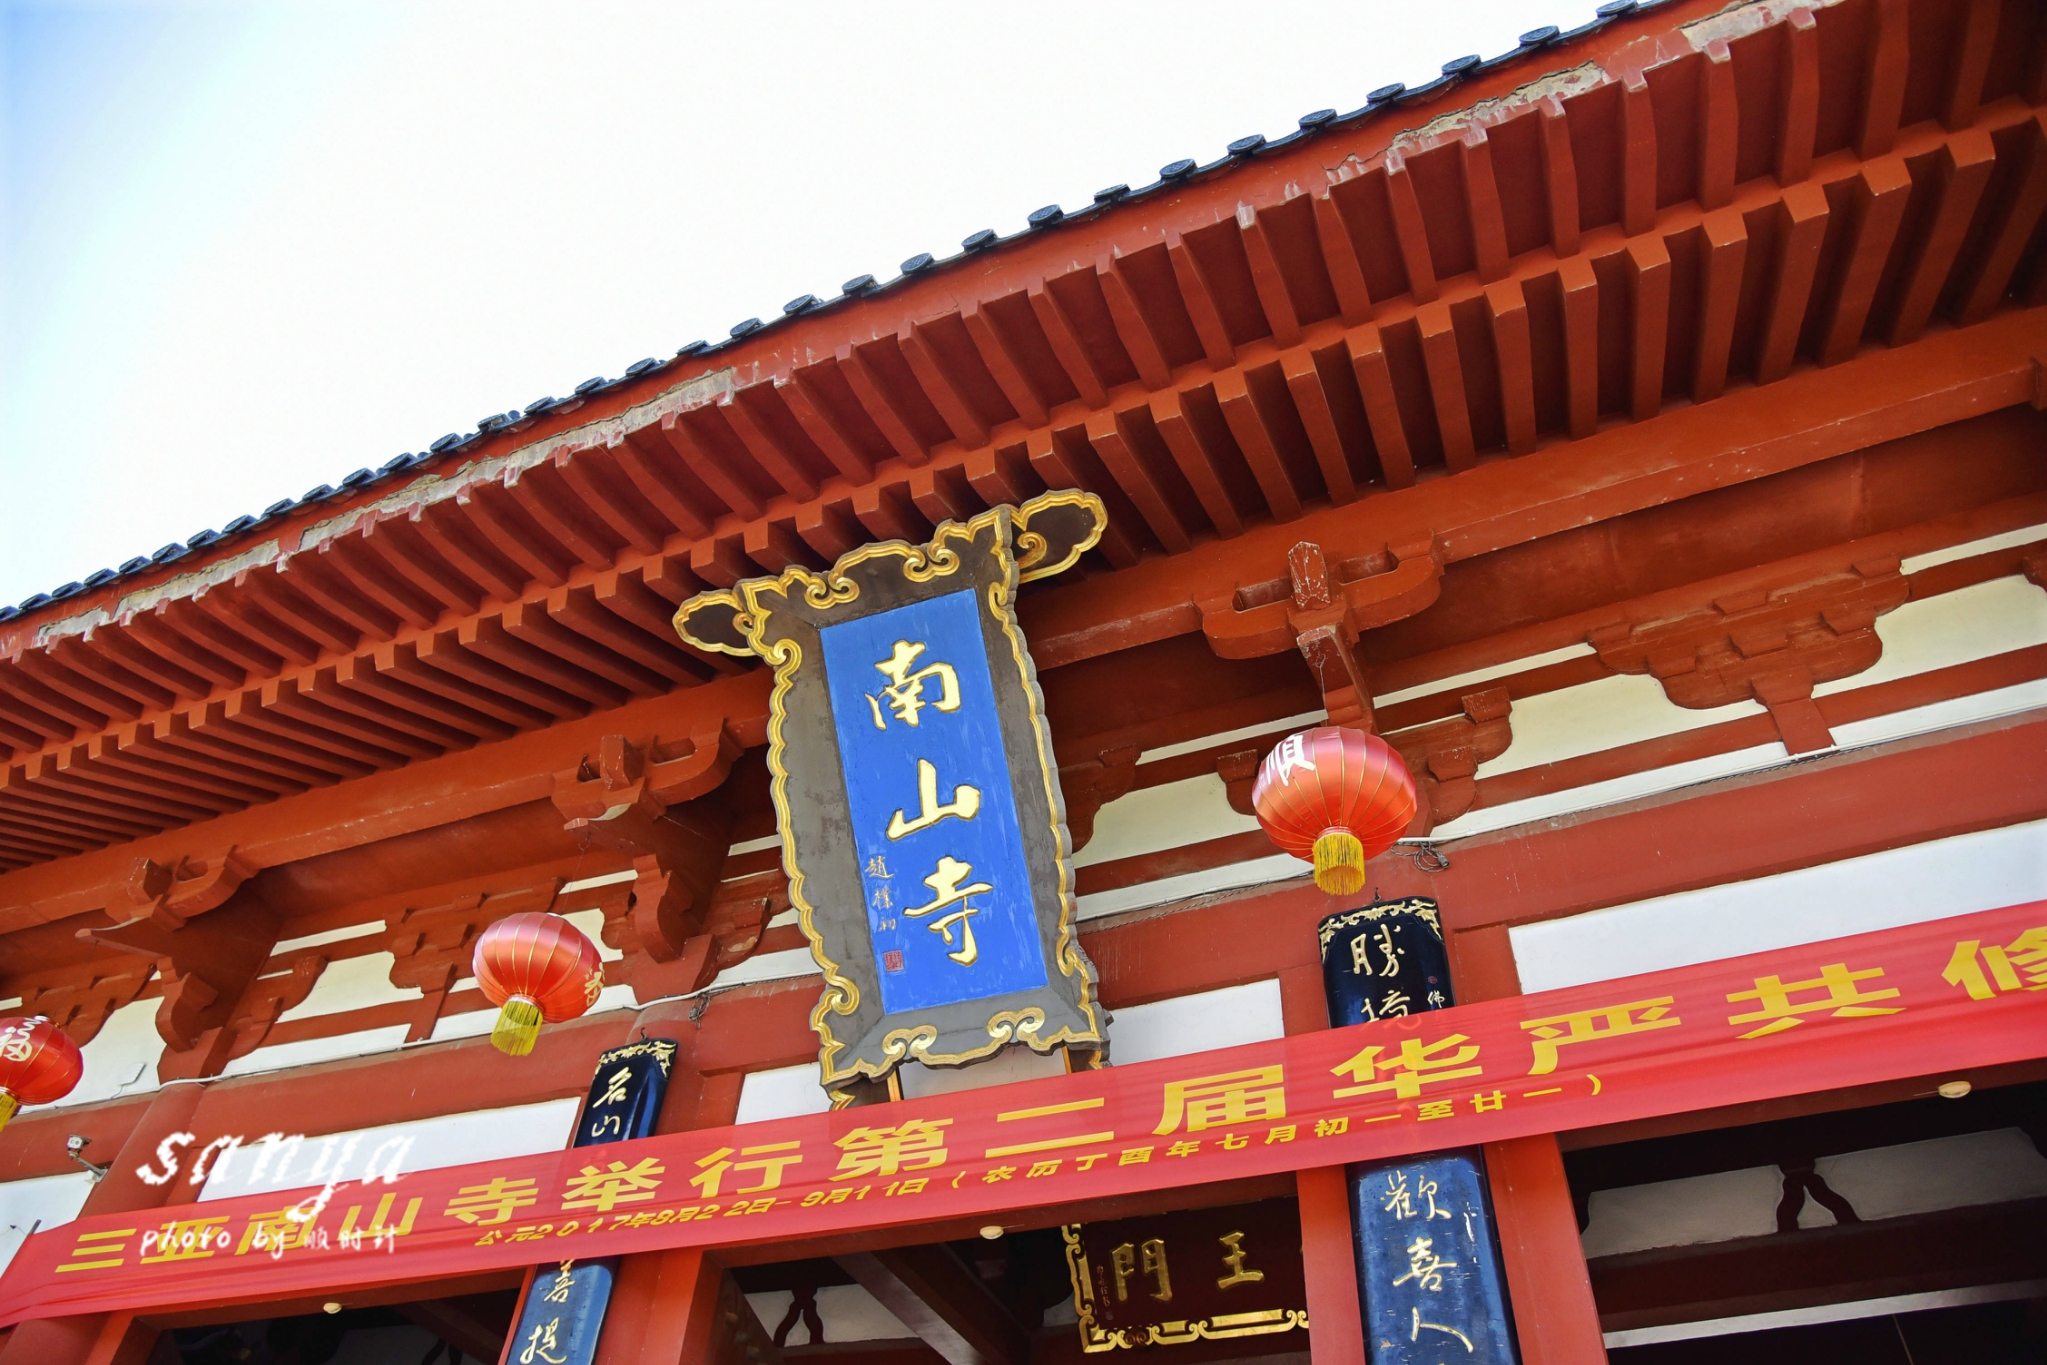 三亚南山寺游览图 - 金玉米 | 专注热门资讯视频